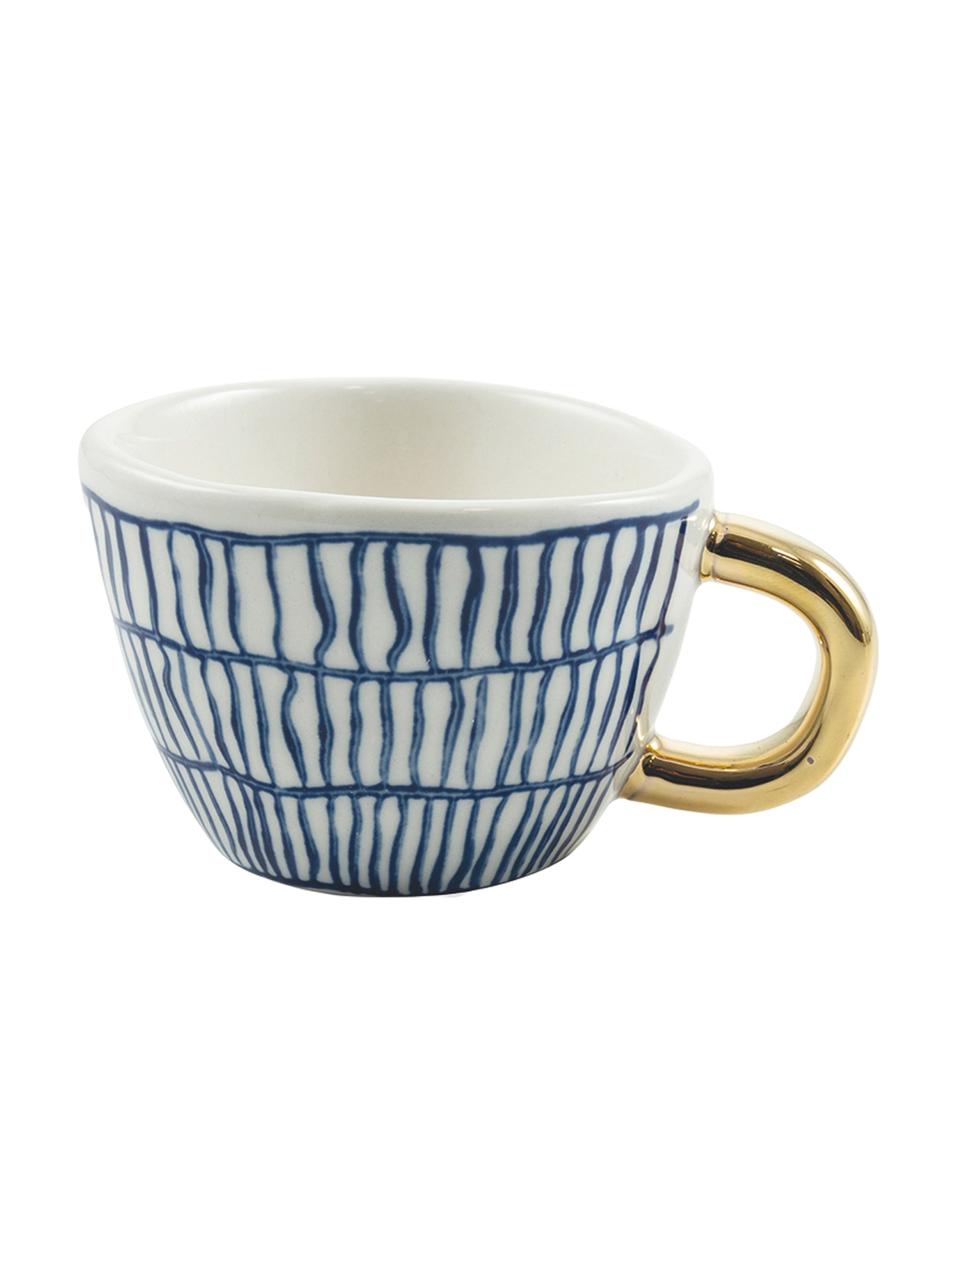 Tasses à espresso à imprimés et poignée dorée Masai, 6 élém., Bleu, blanc, couleur dorée